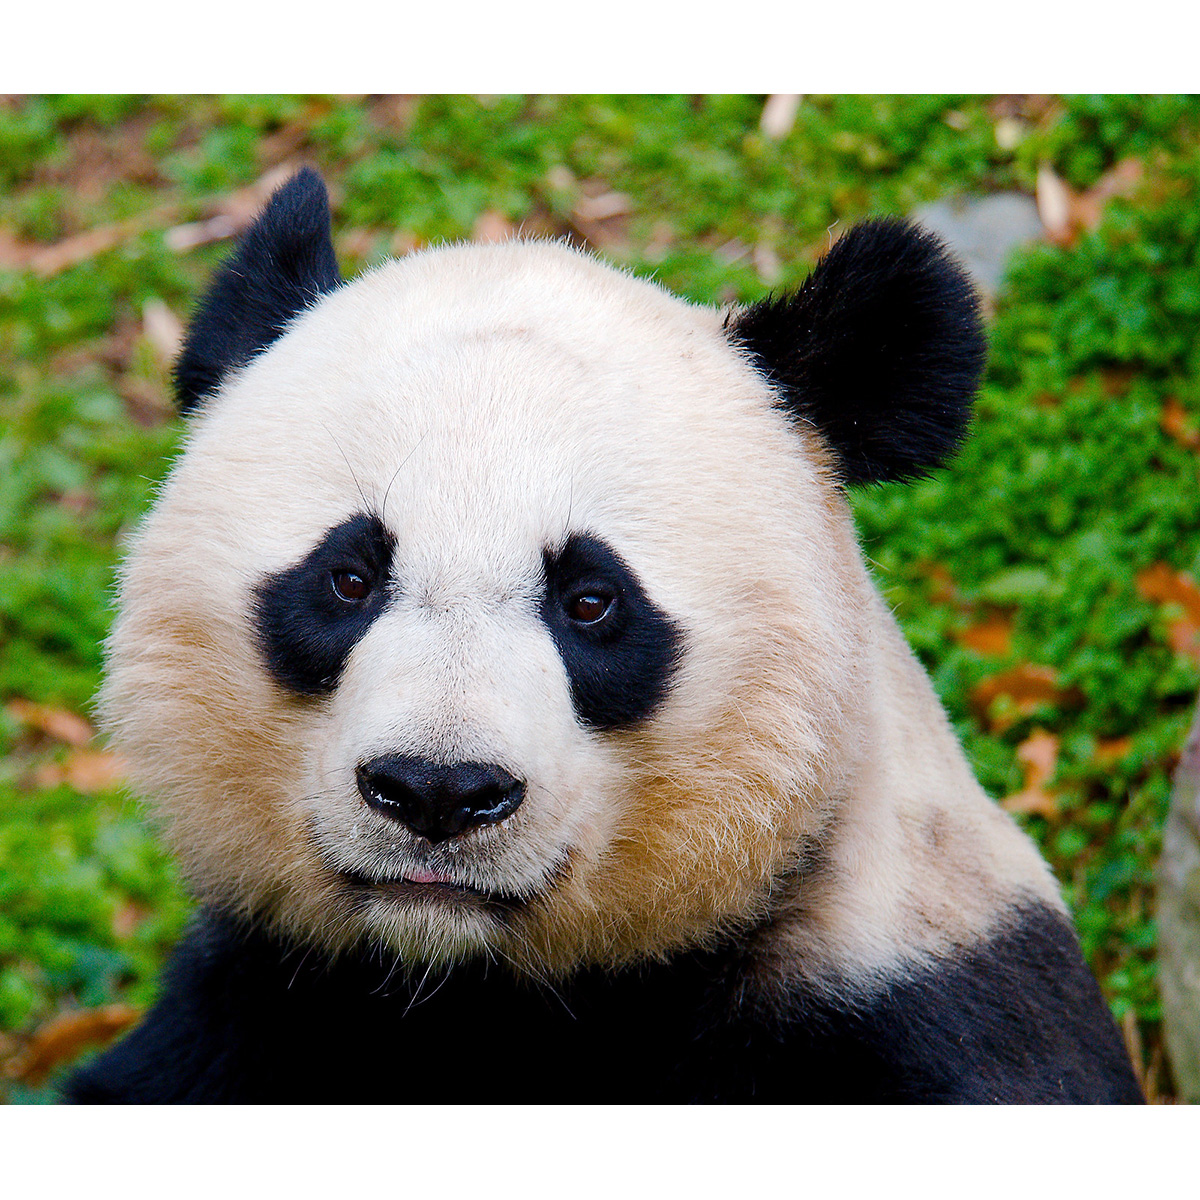 Большая панда (Ailuropoda melanoleuca) Фото №10